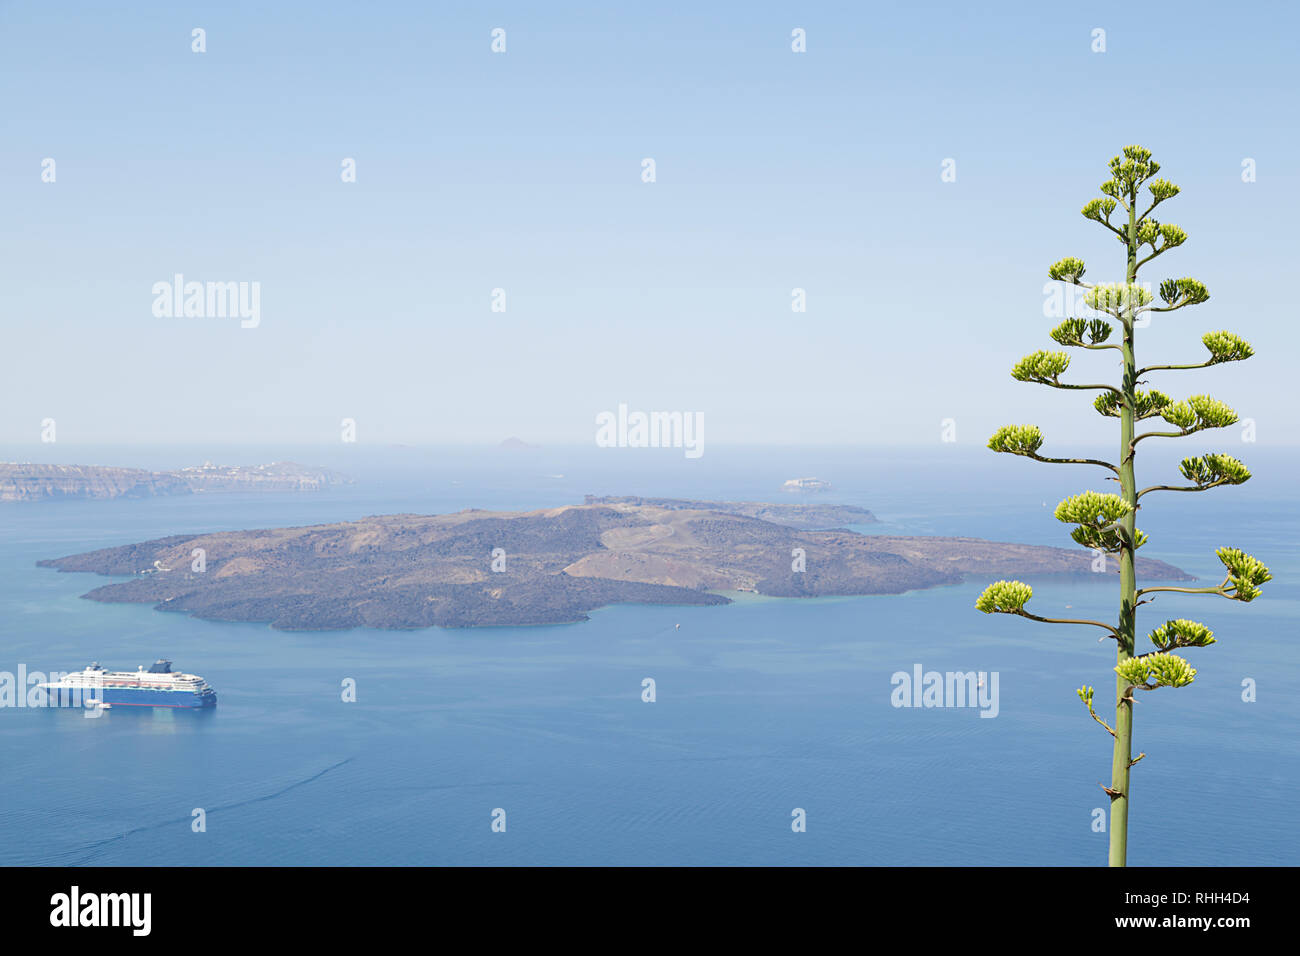 Paisaje con vistas al mar Egeo. Crucero en el mar cerca de las islas.planta de Agave flor en primer plano. La isla de Santorini, Grecia Foto de stock